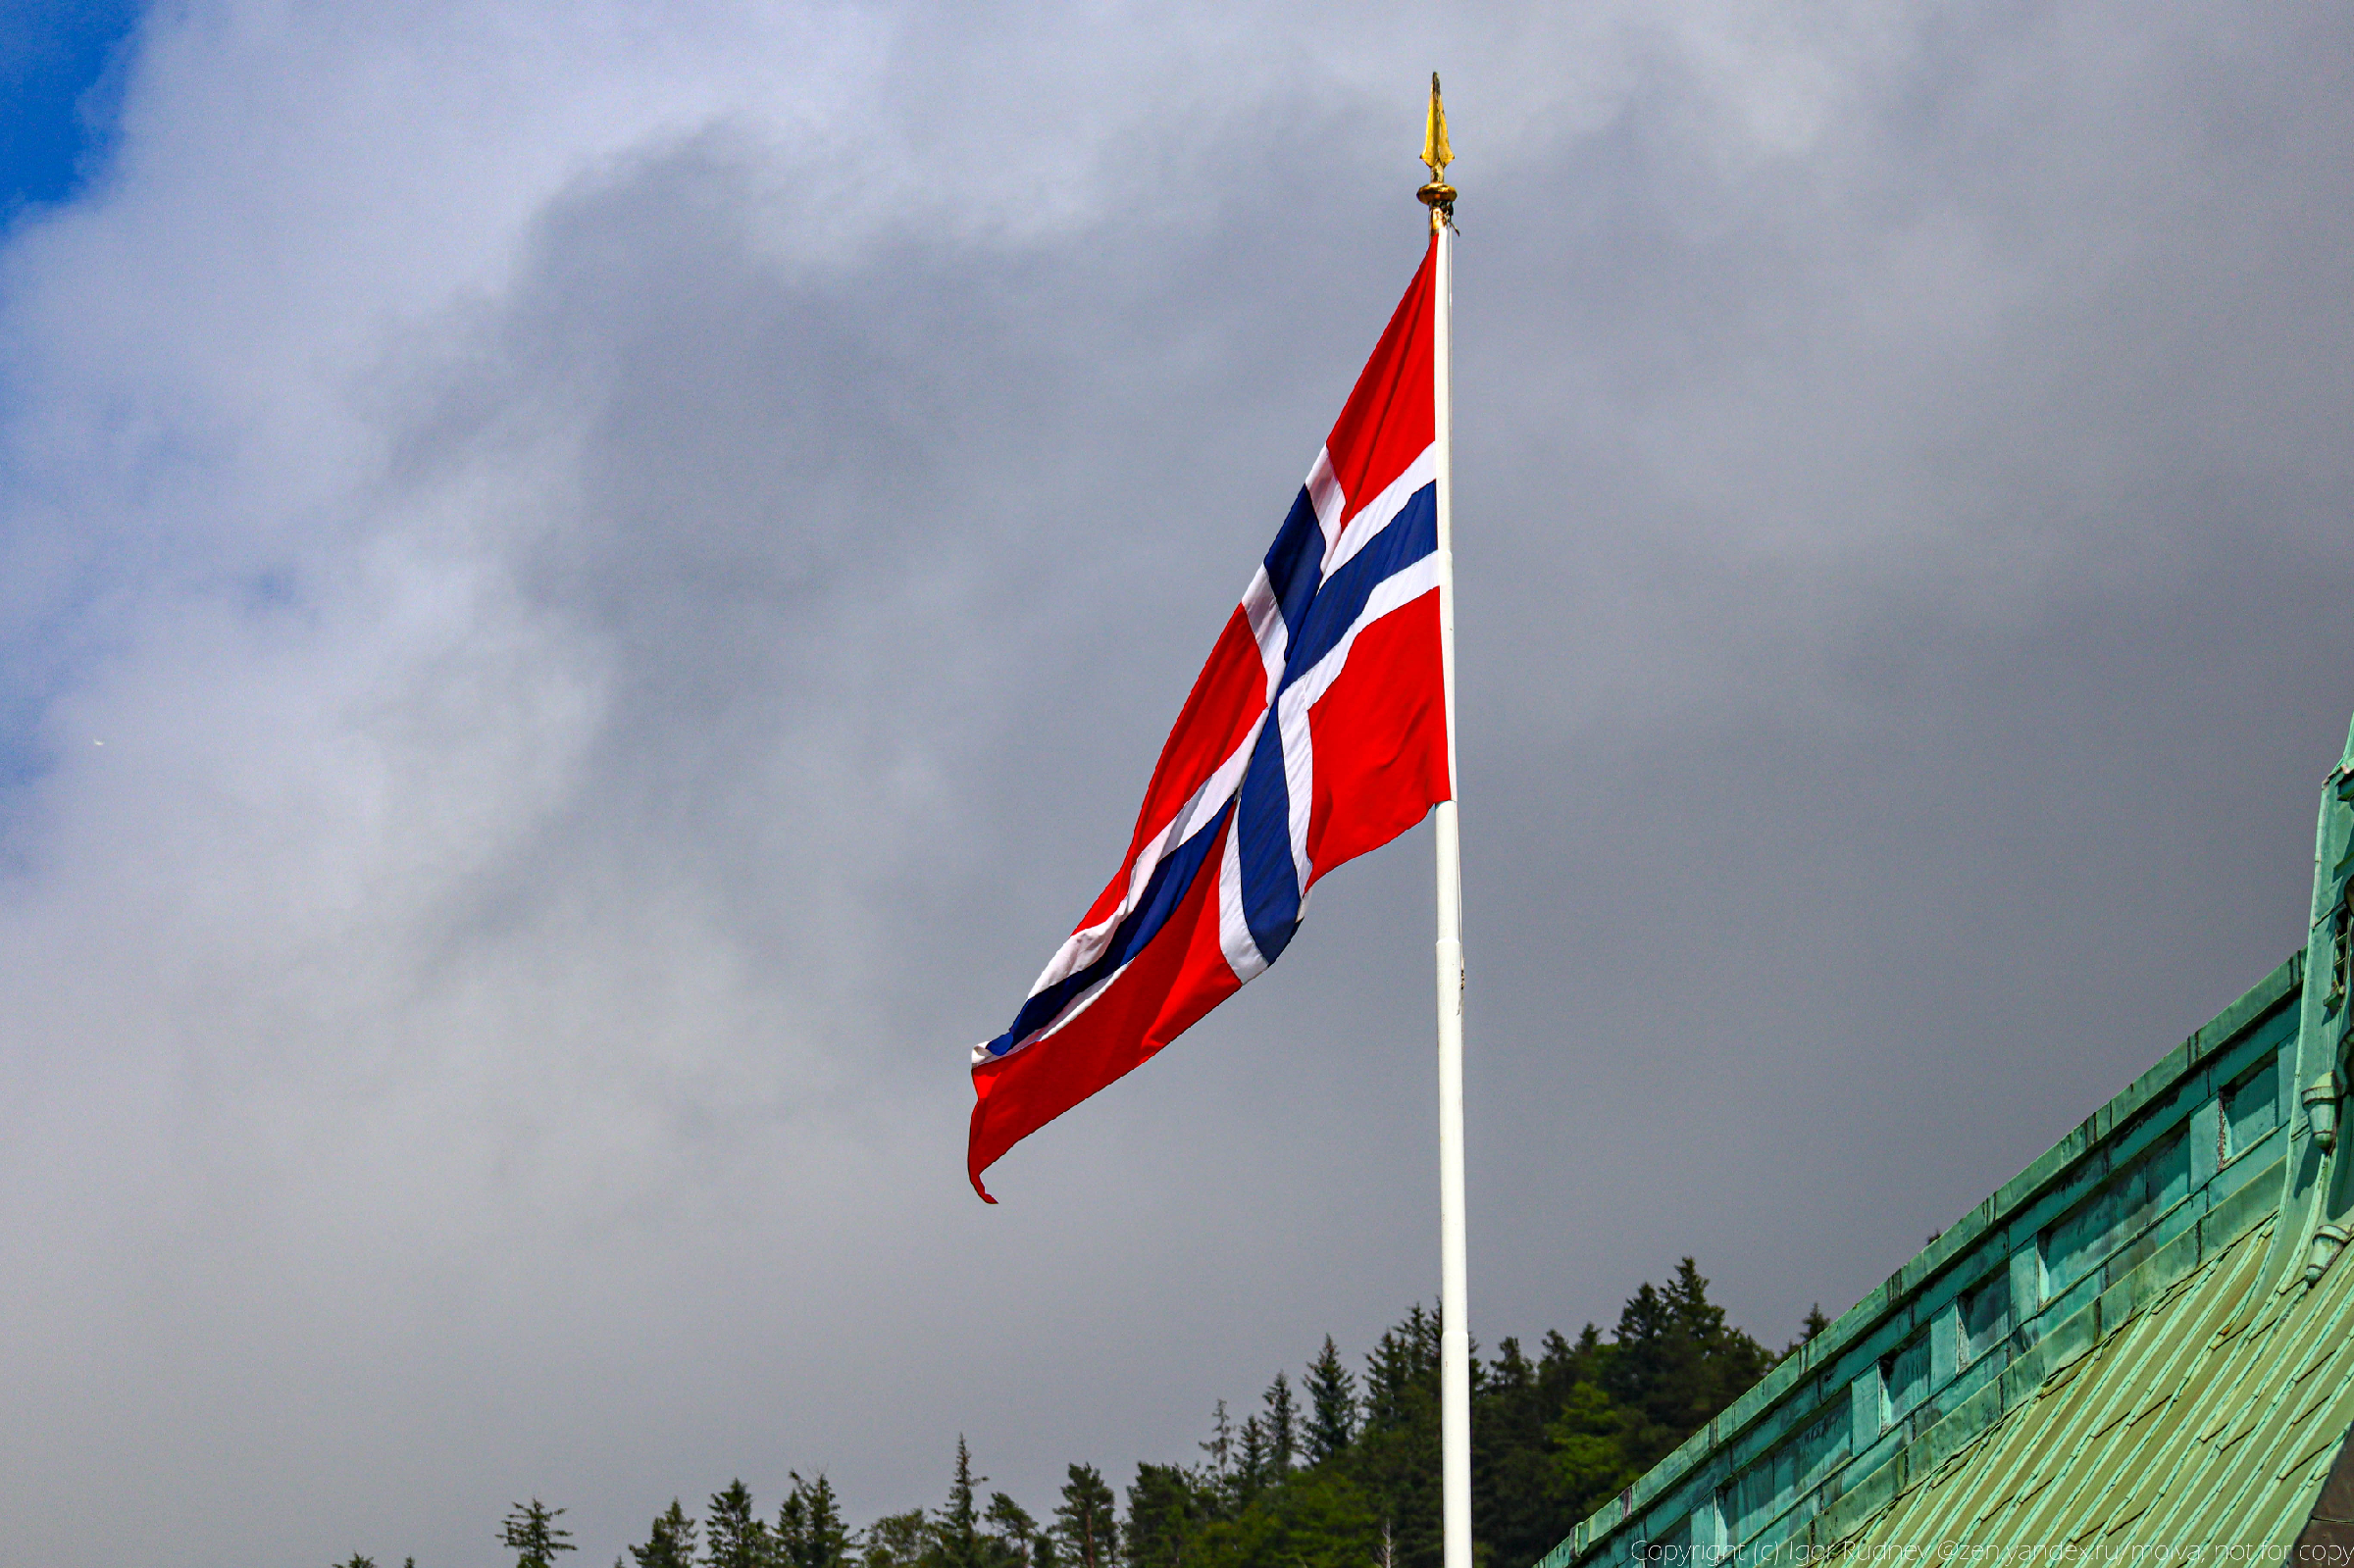 Продолжительность жизни в Норвегии – одна из самых высоких в мире, хотя у них постоянно холодно и сыро. Почему так0